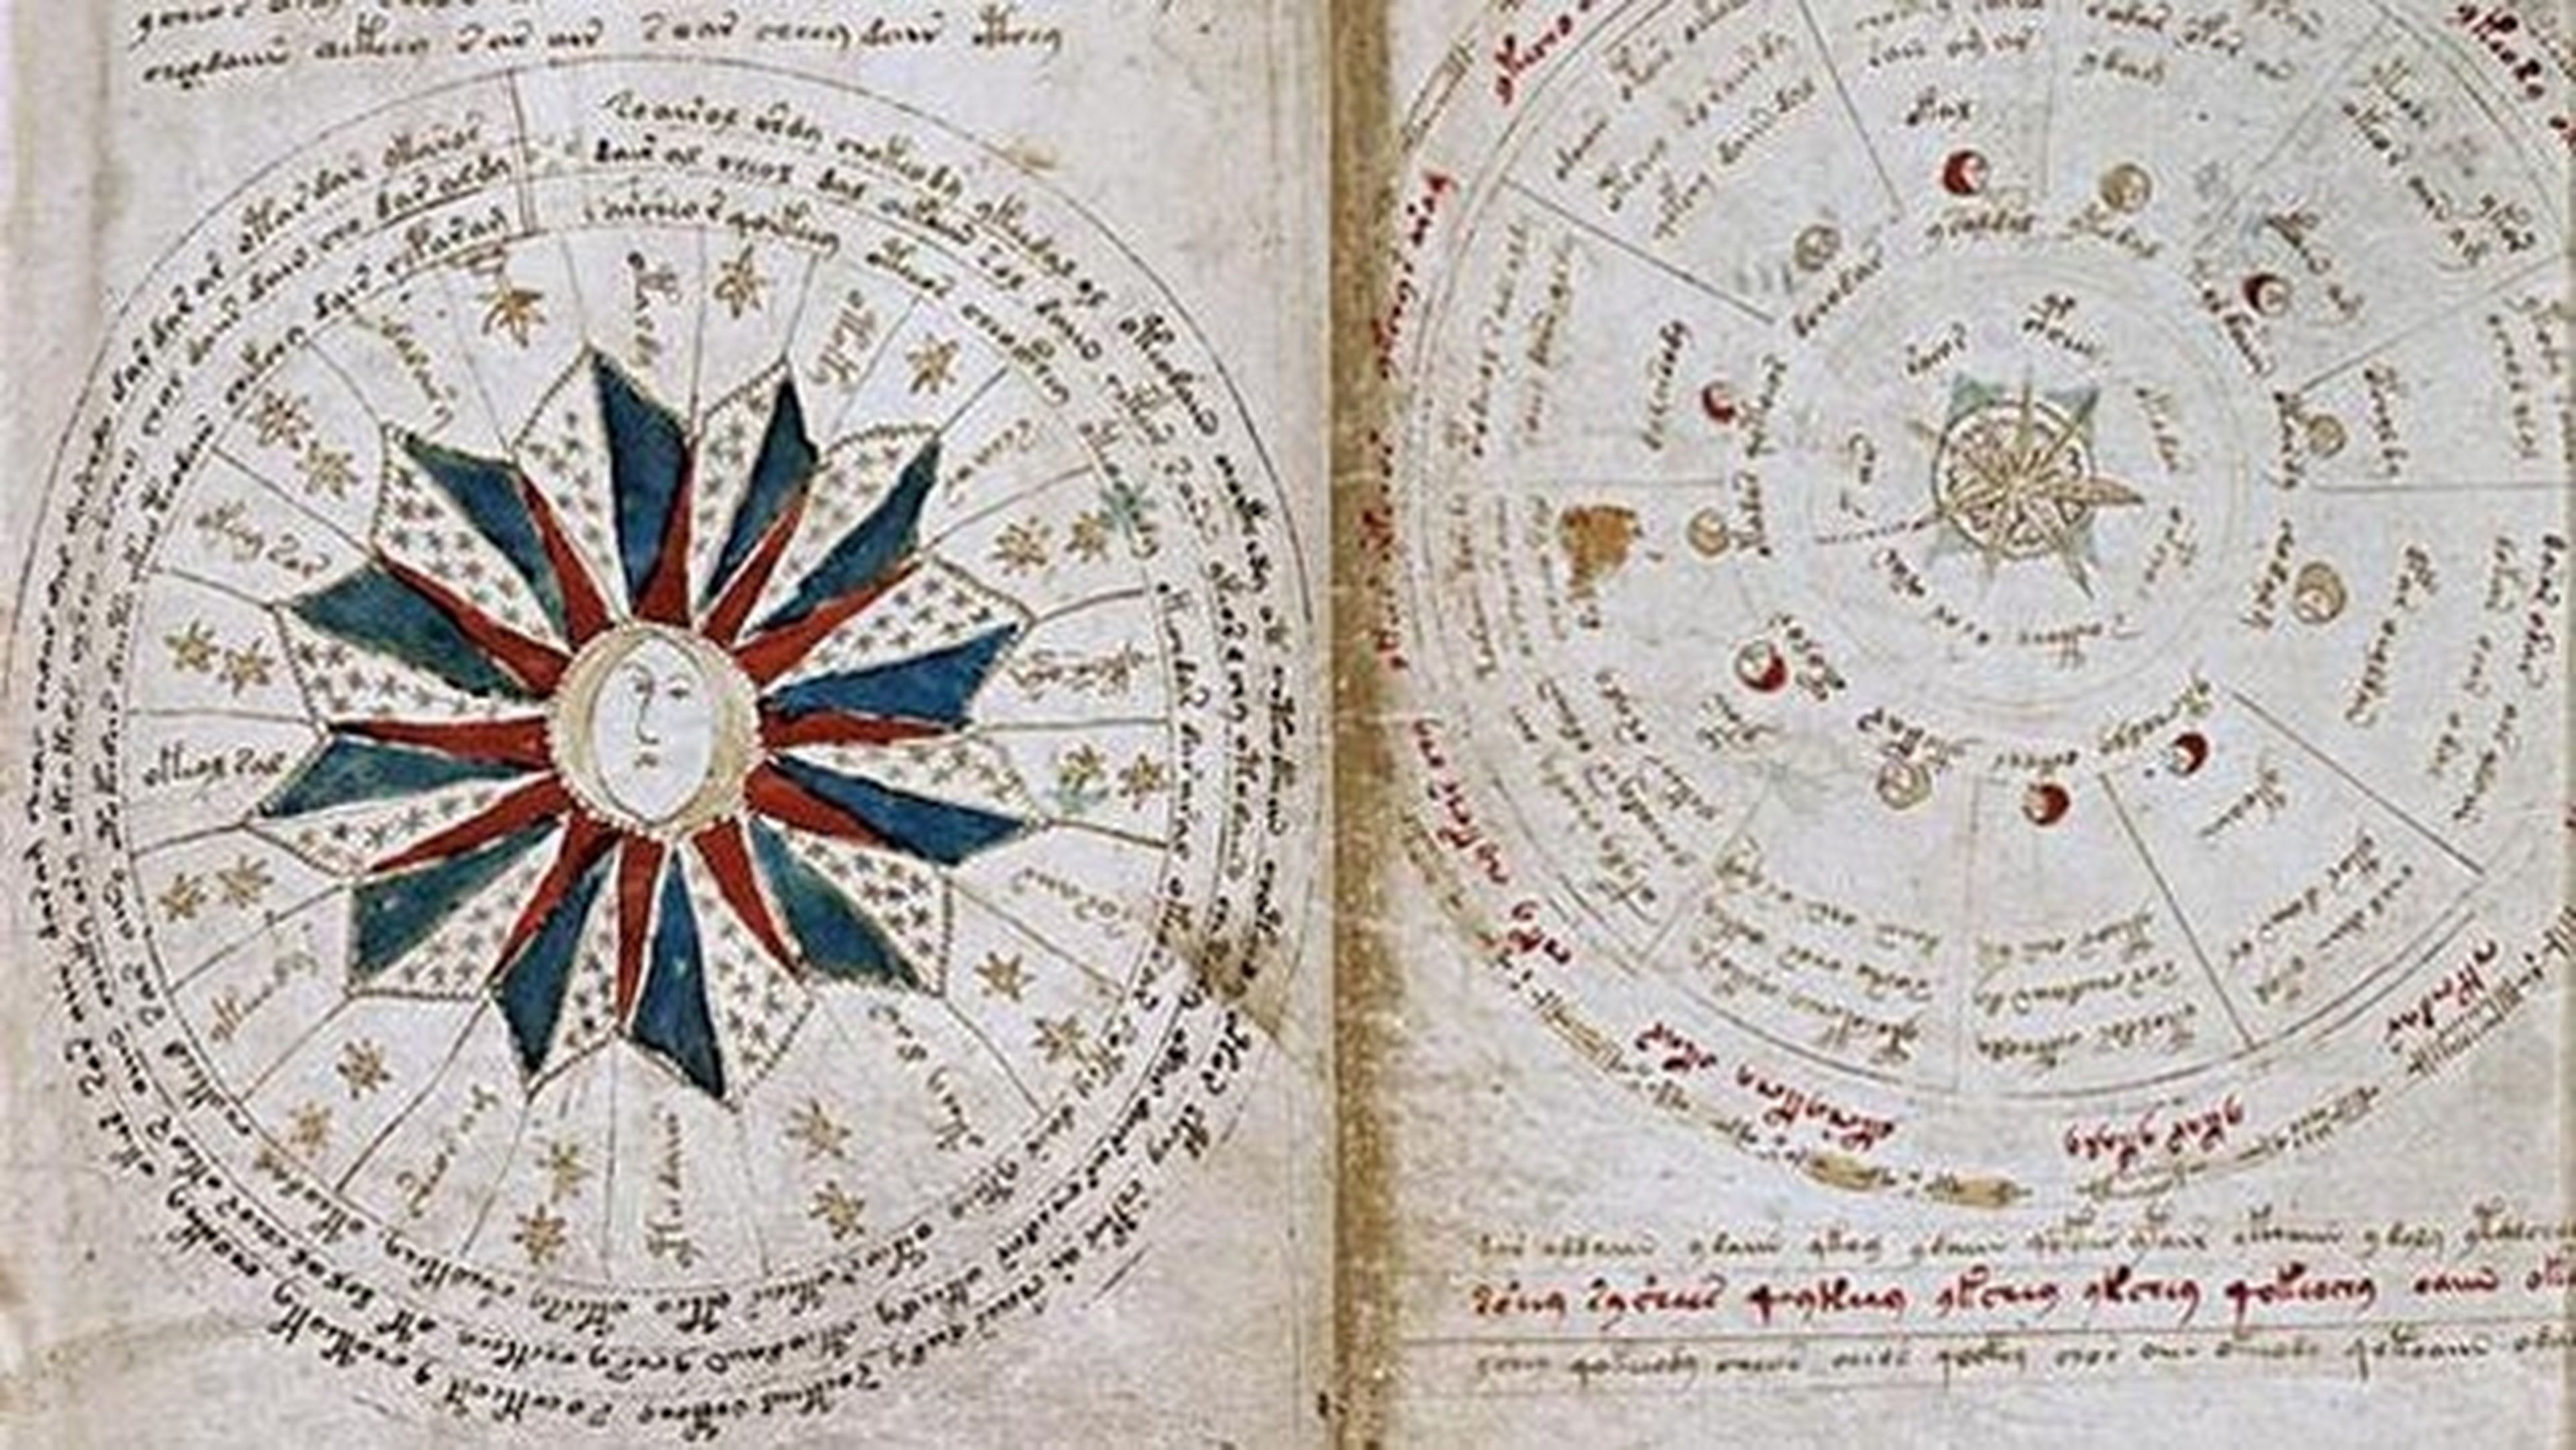 138685 codice voynich libro mas raro mundo copiara burgos - El códice Voynich, el libro más raro del mundo, se copiará en Burgos